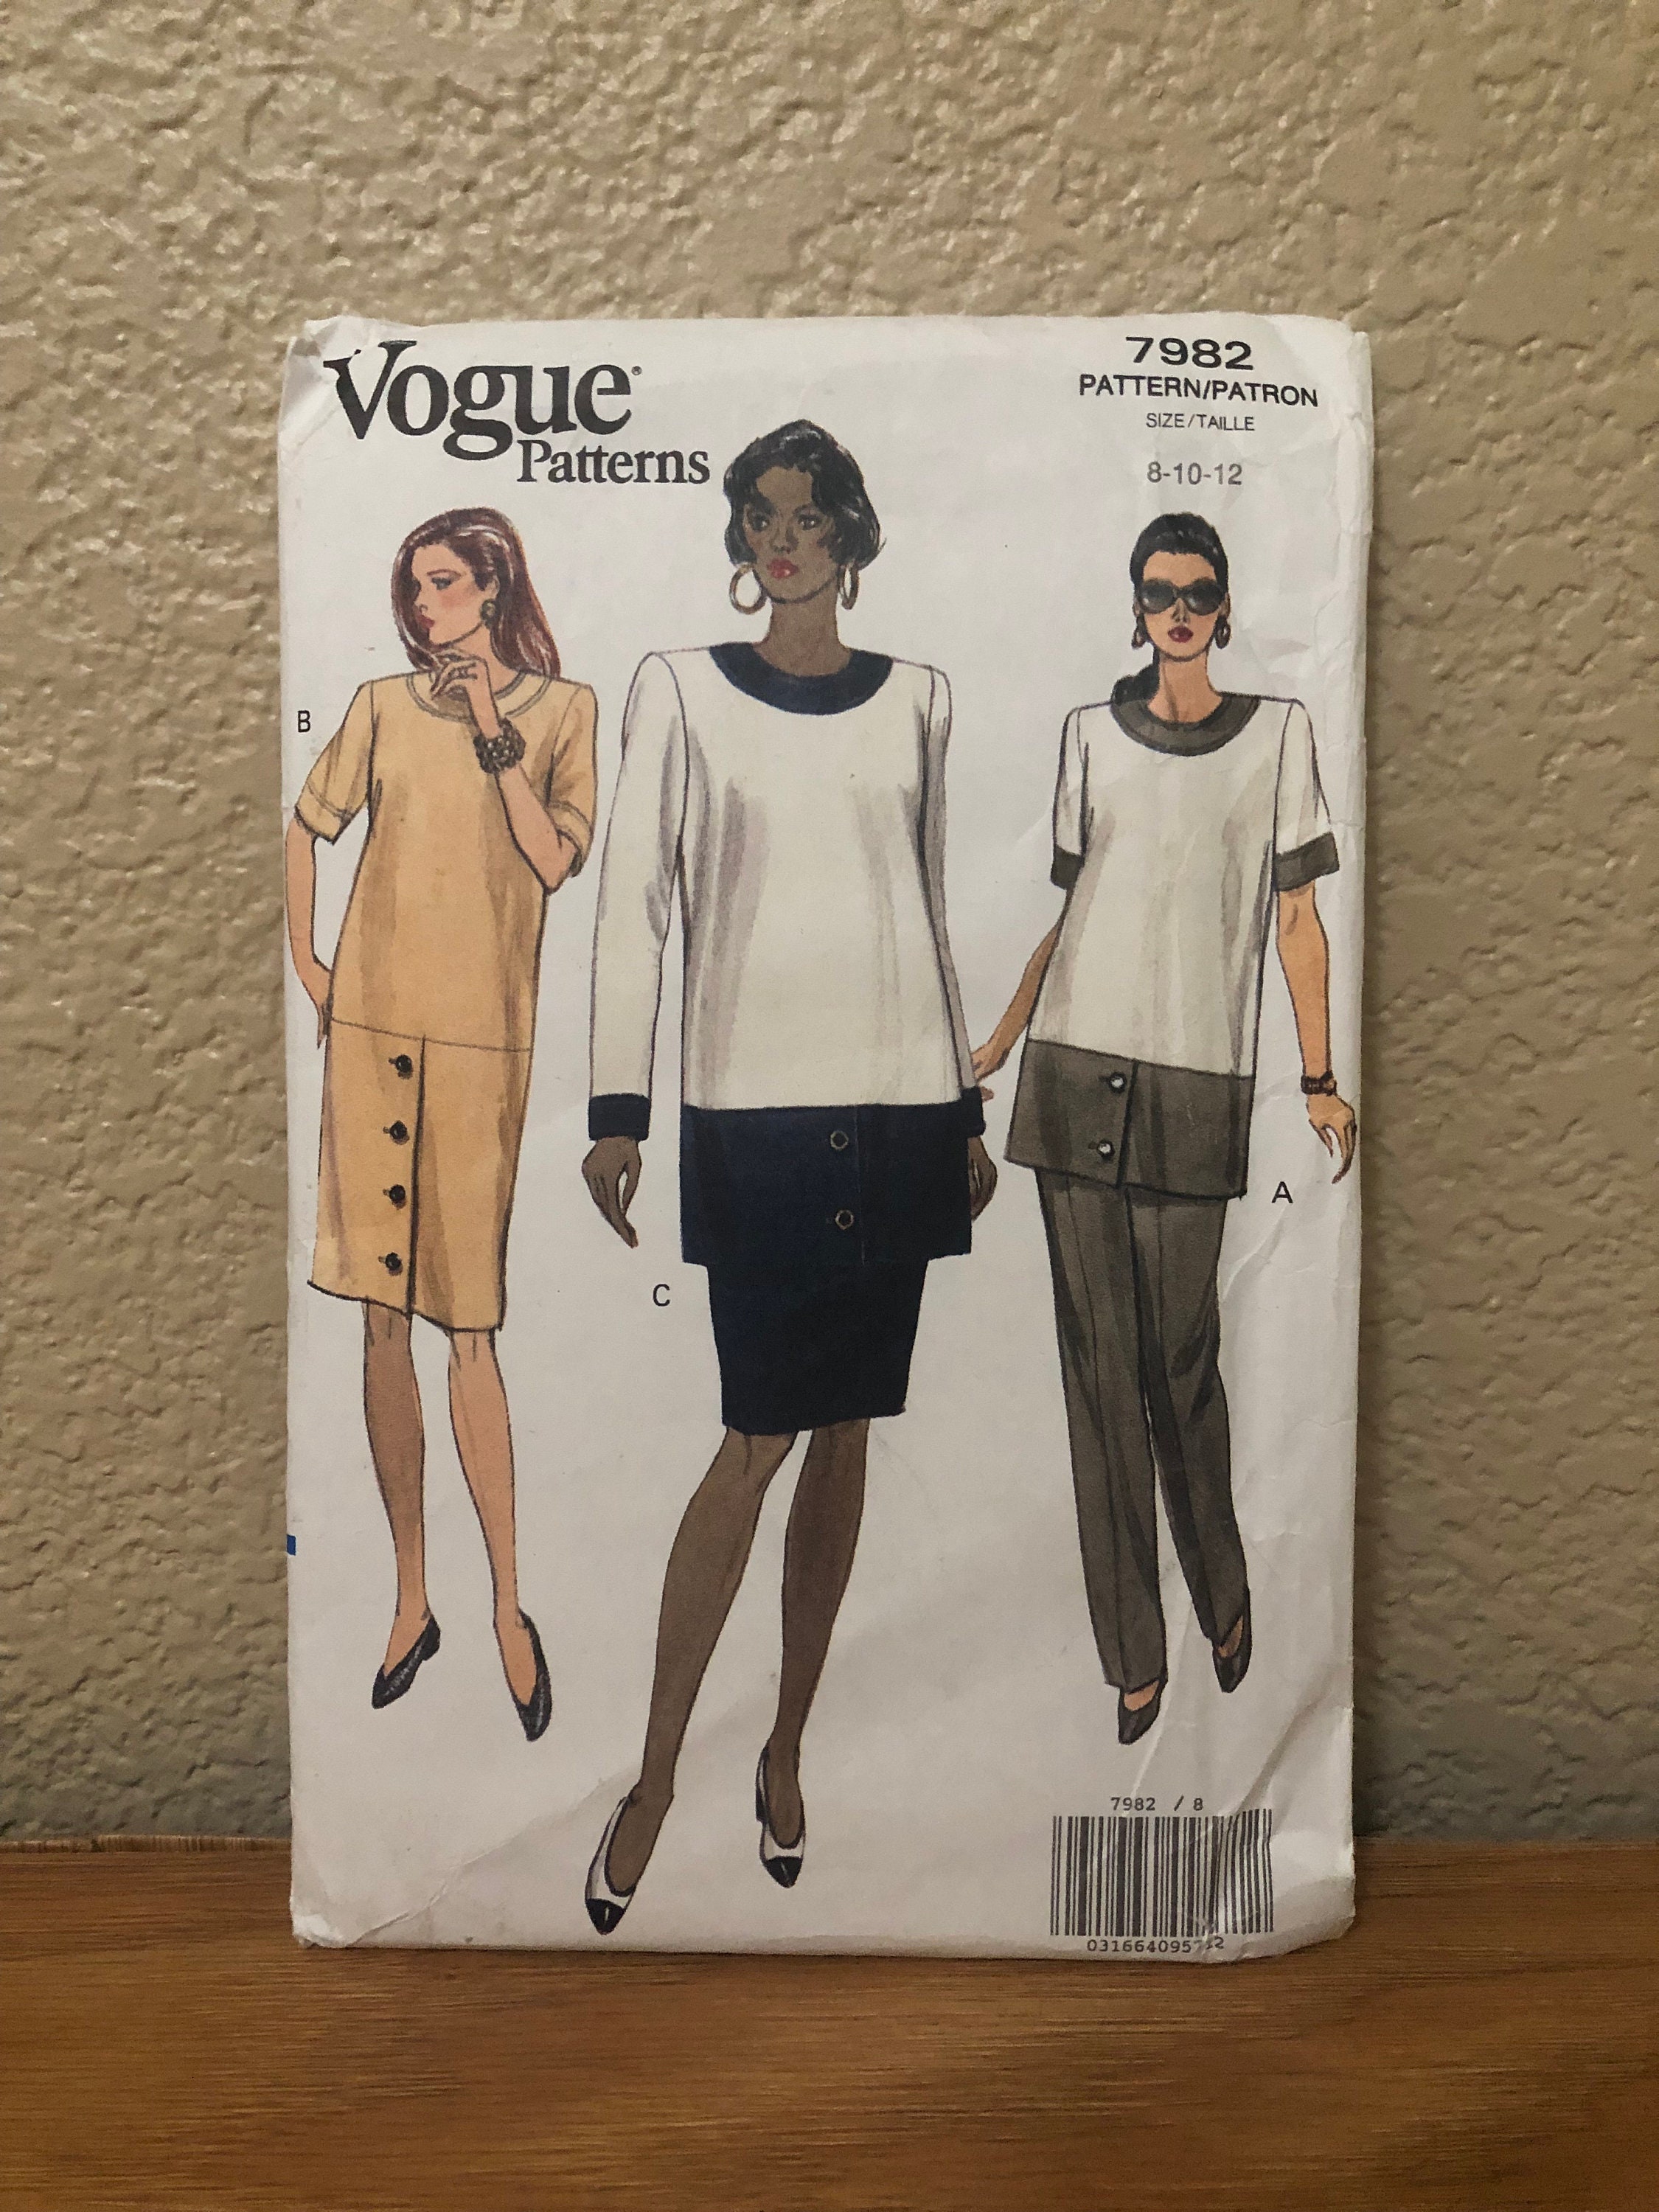 Vogue Patterns 7982 - Hermes Birkin bag